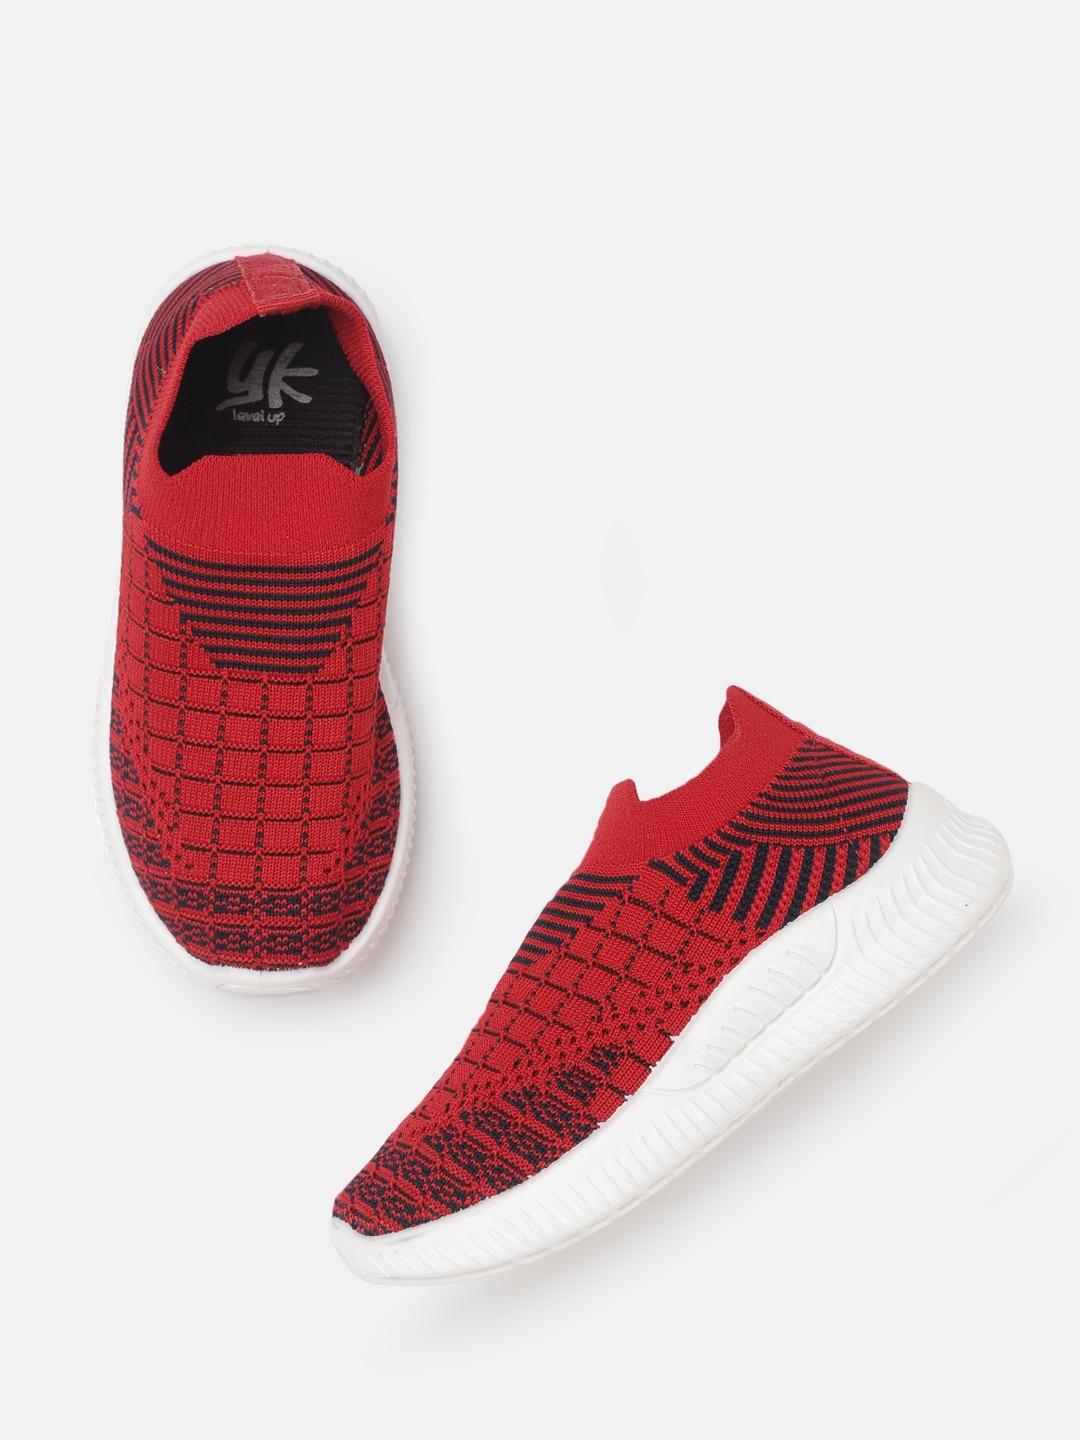 yk girls red & black woven design slip-on sneakers